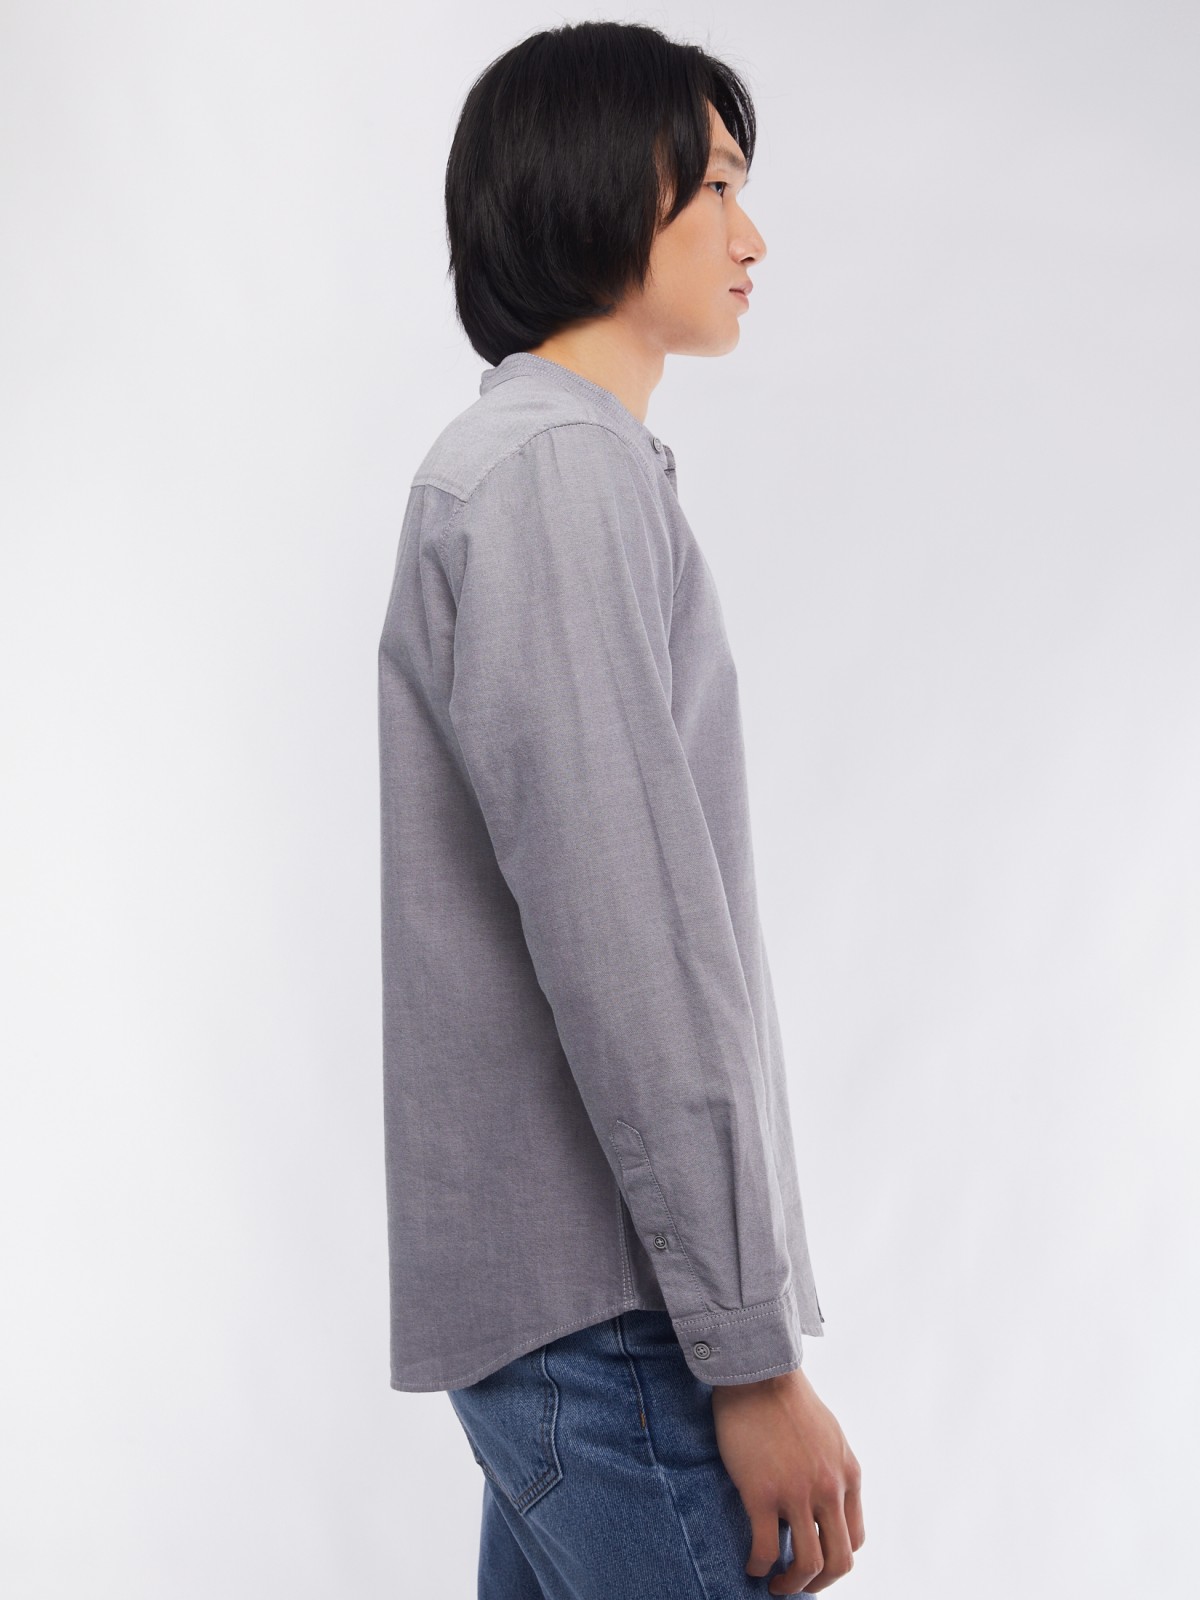 Офисная рубашка из хлопка с воротником-стойкой и длинным рукавом zolla 014122159033, цвет серый, размер M - фото 5